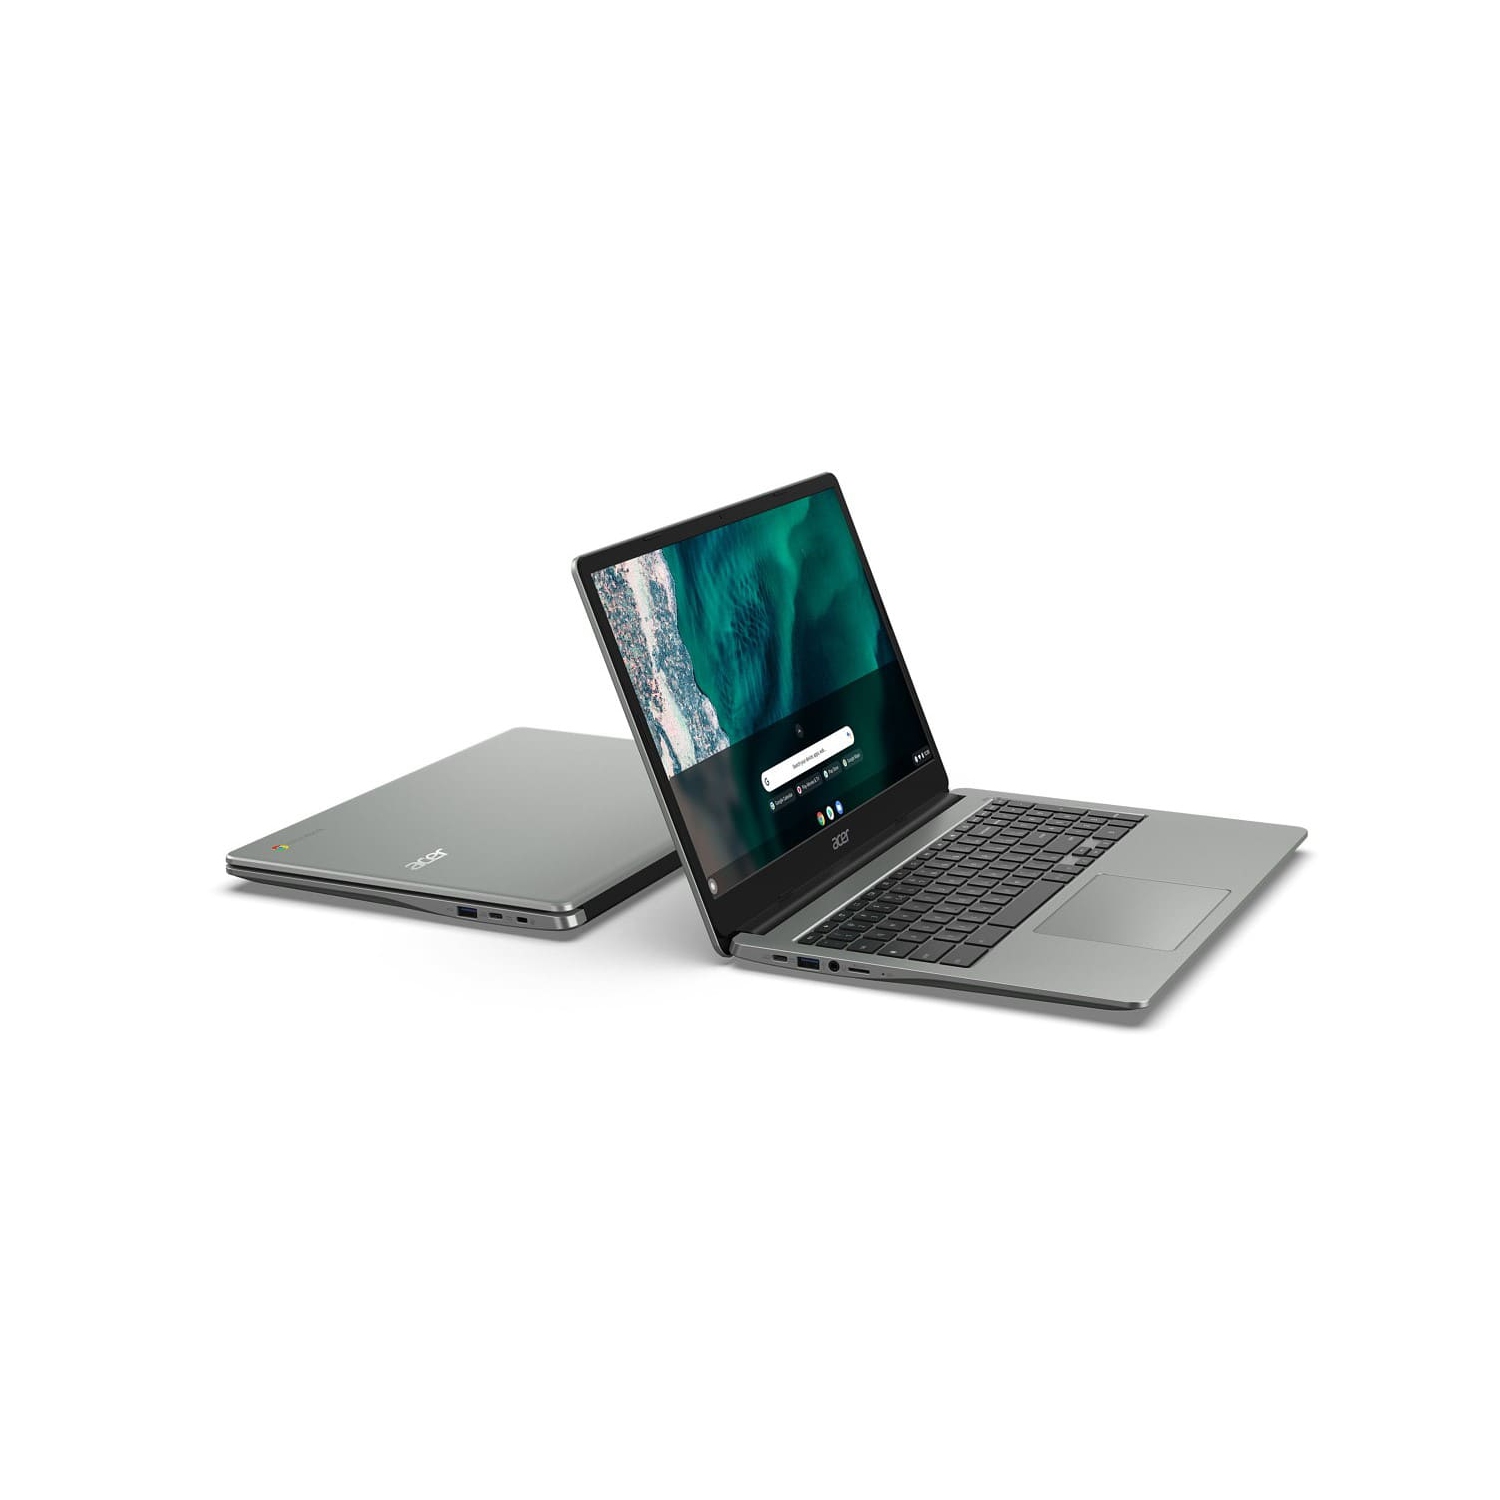 Acer 15.6" Chromebook (Intel N4500/8Gb RAM/128Gb eMMC/Google Chrome) - Refurbished (Excellent) w/ 1 Year Warranty